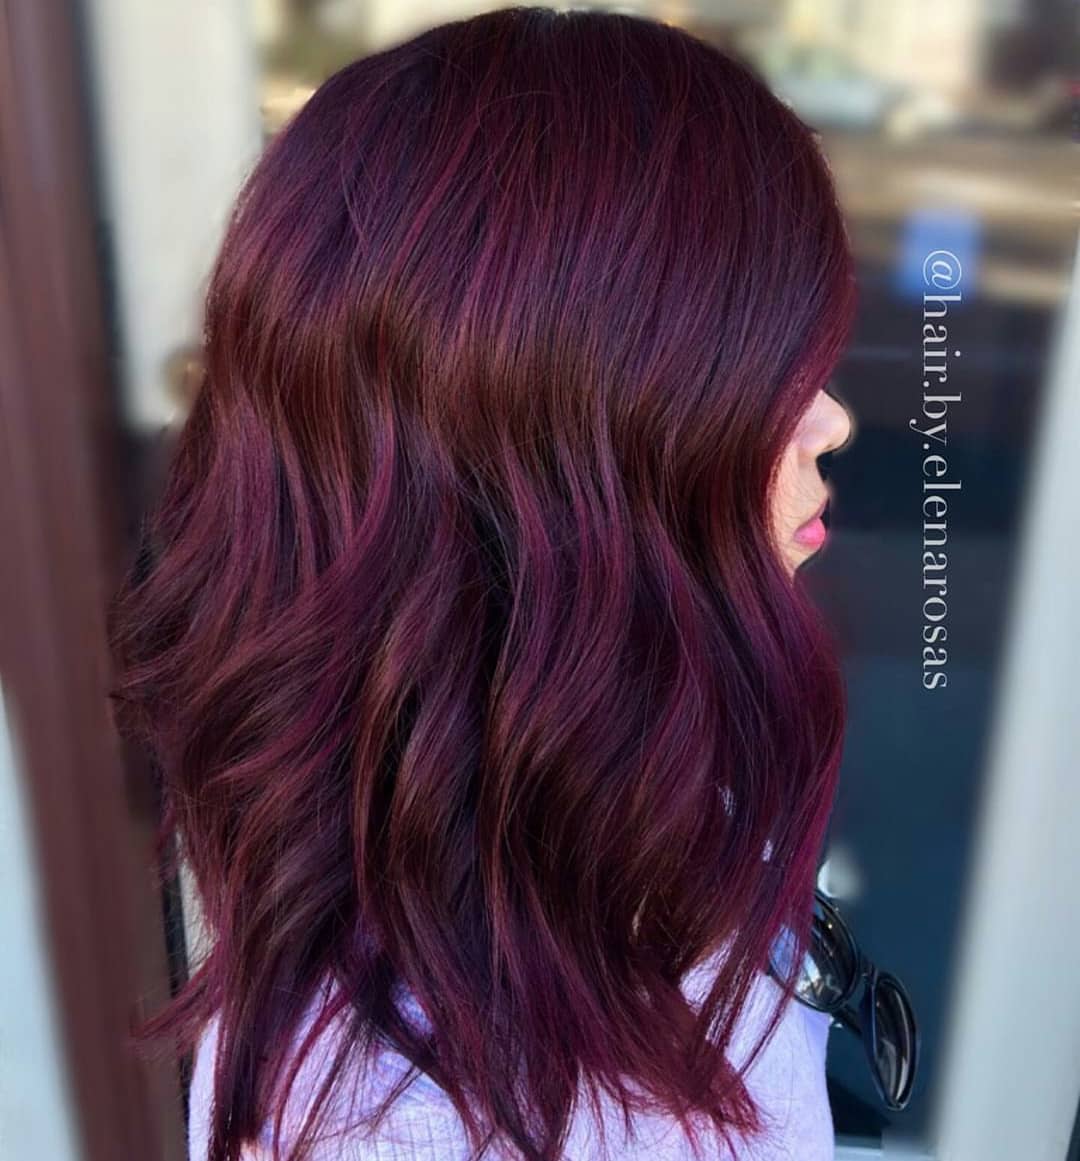 Wanita dengan warna rambut burgundy purple.